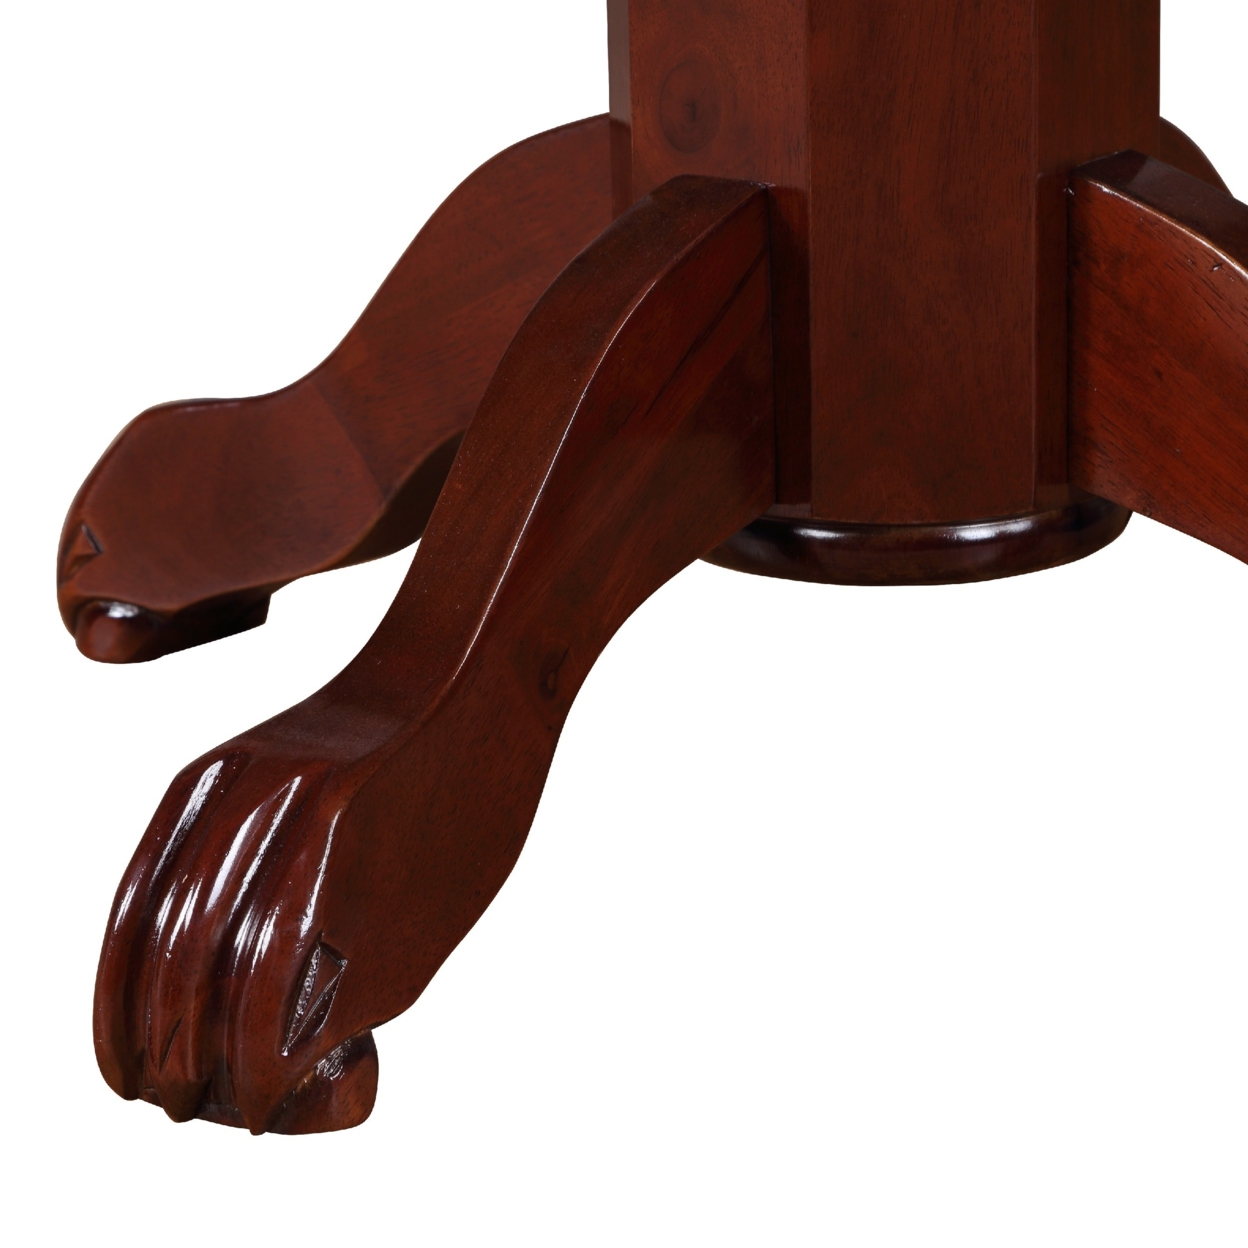 Ava 42 Inch Pub Bar Table, Wood, Sunburst Design, Carved Pedestal, Espresso Brown